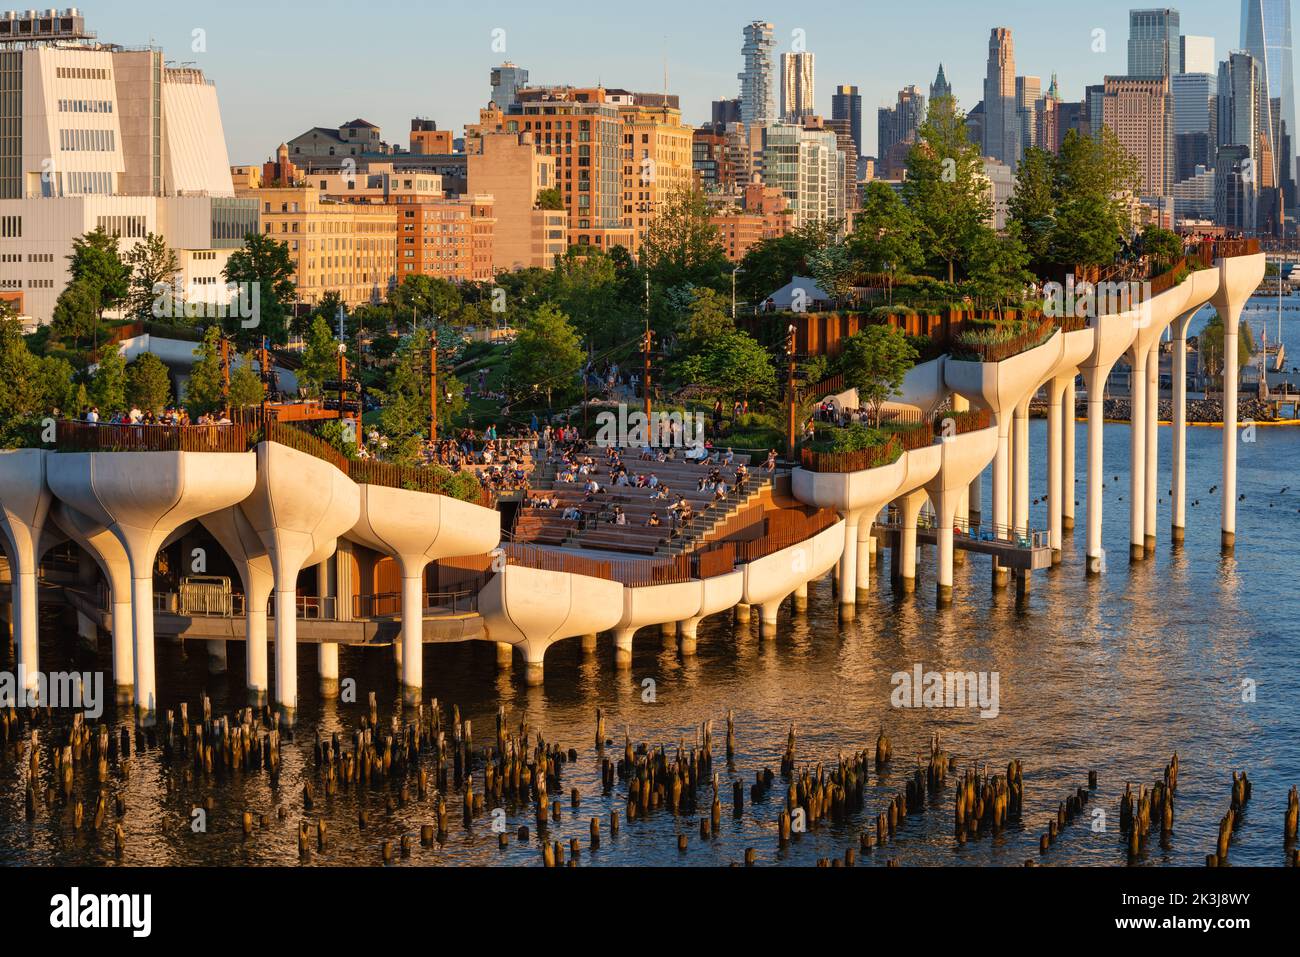 New York City, Little Island öffentlicher Park bei Sonnenuntergang. Erhöhter Park mit Amphitheater am Hudson River Park (Pier 55), West Village, Manhattan Stockfoto